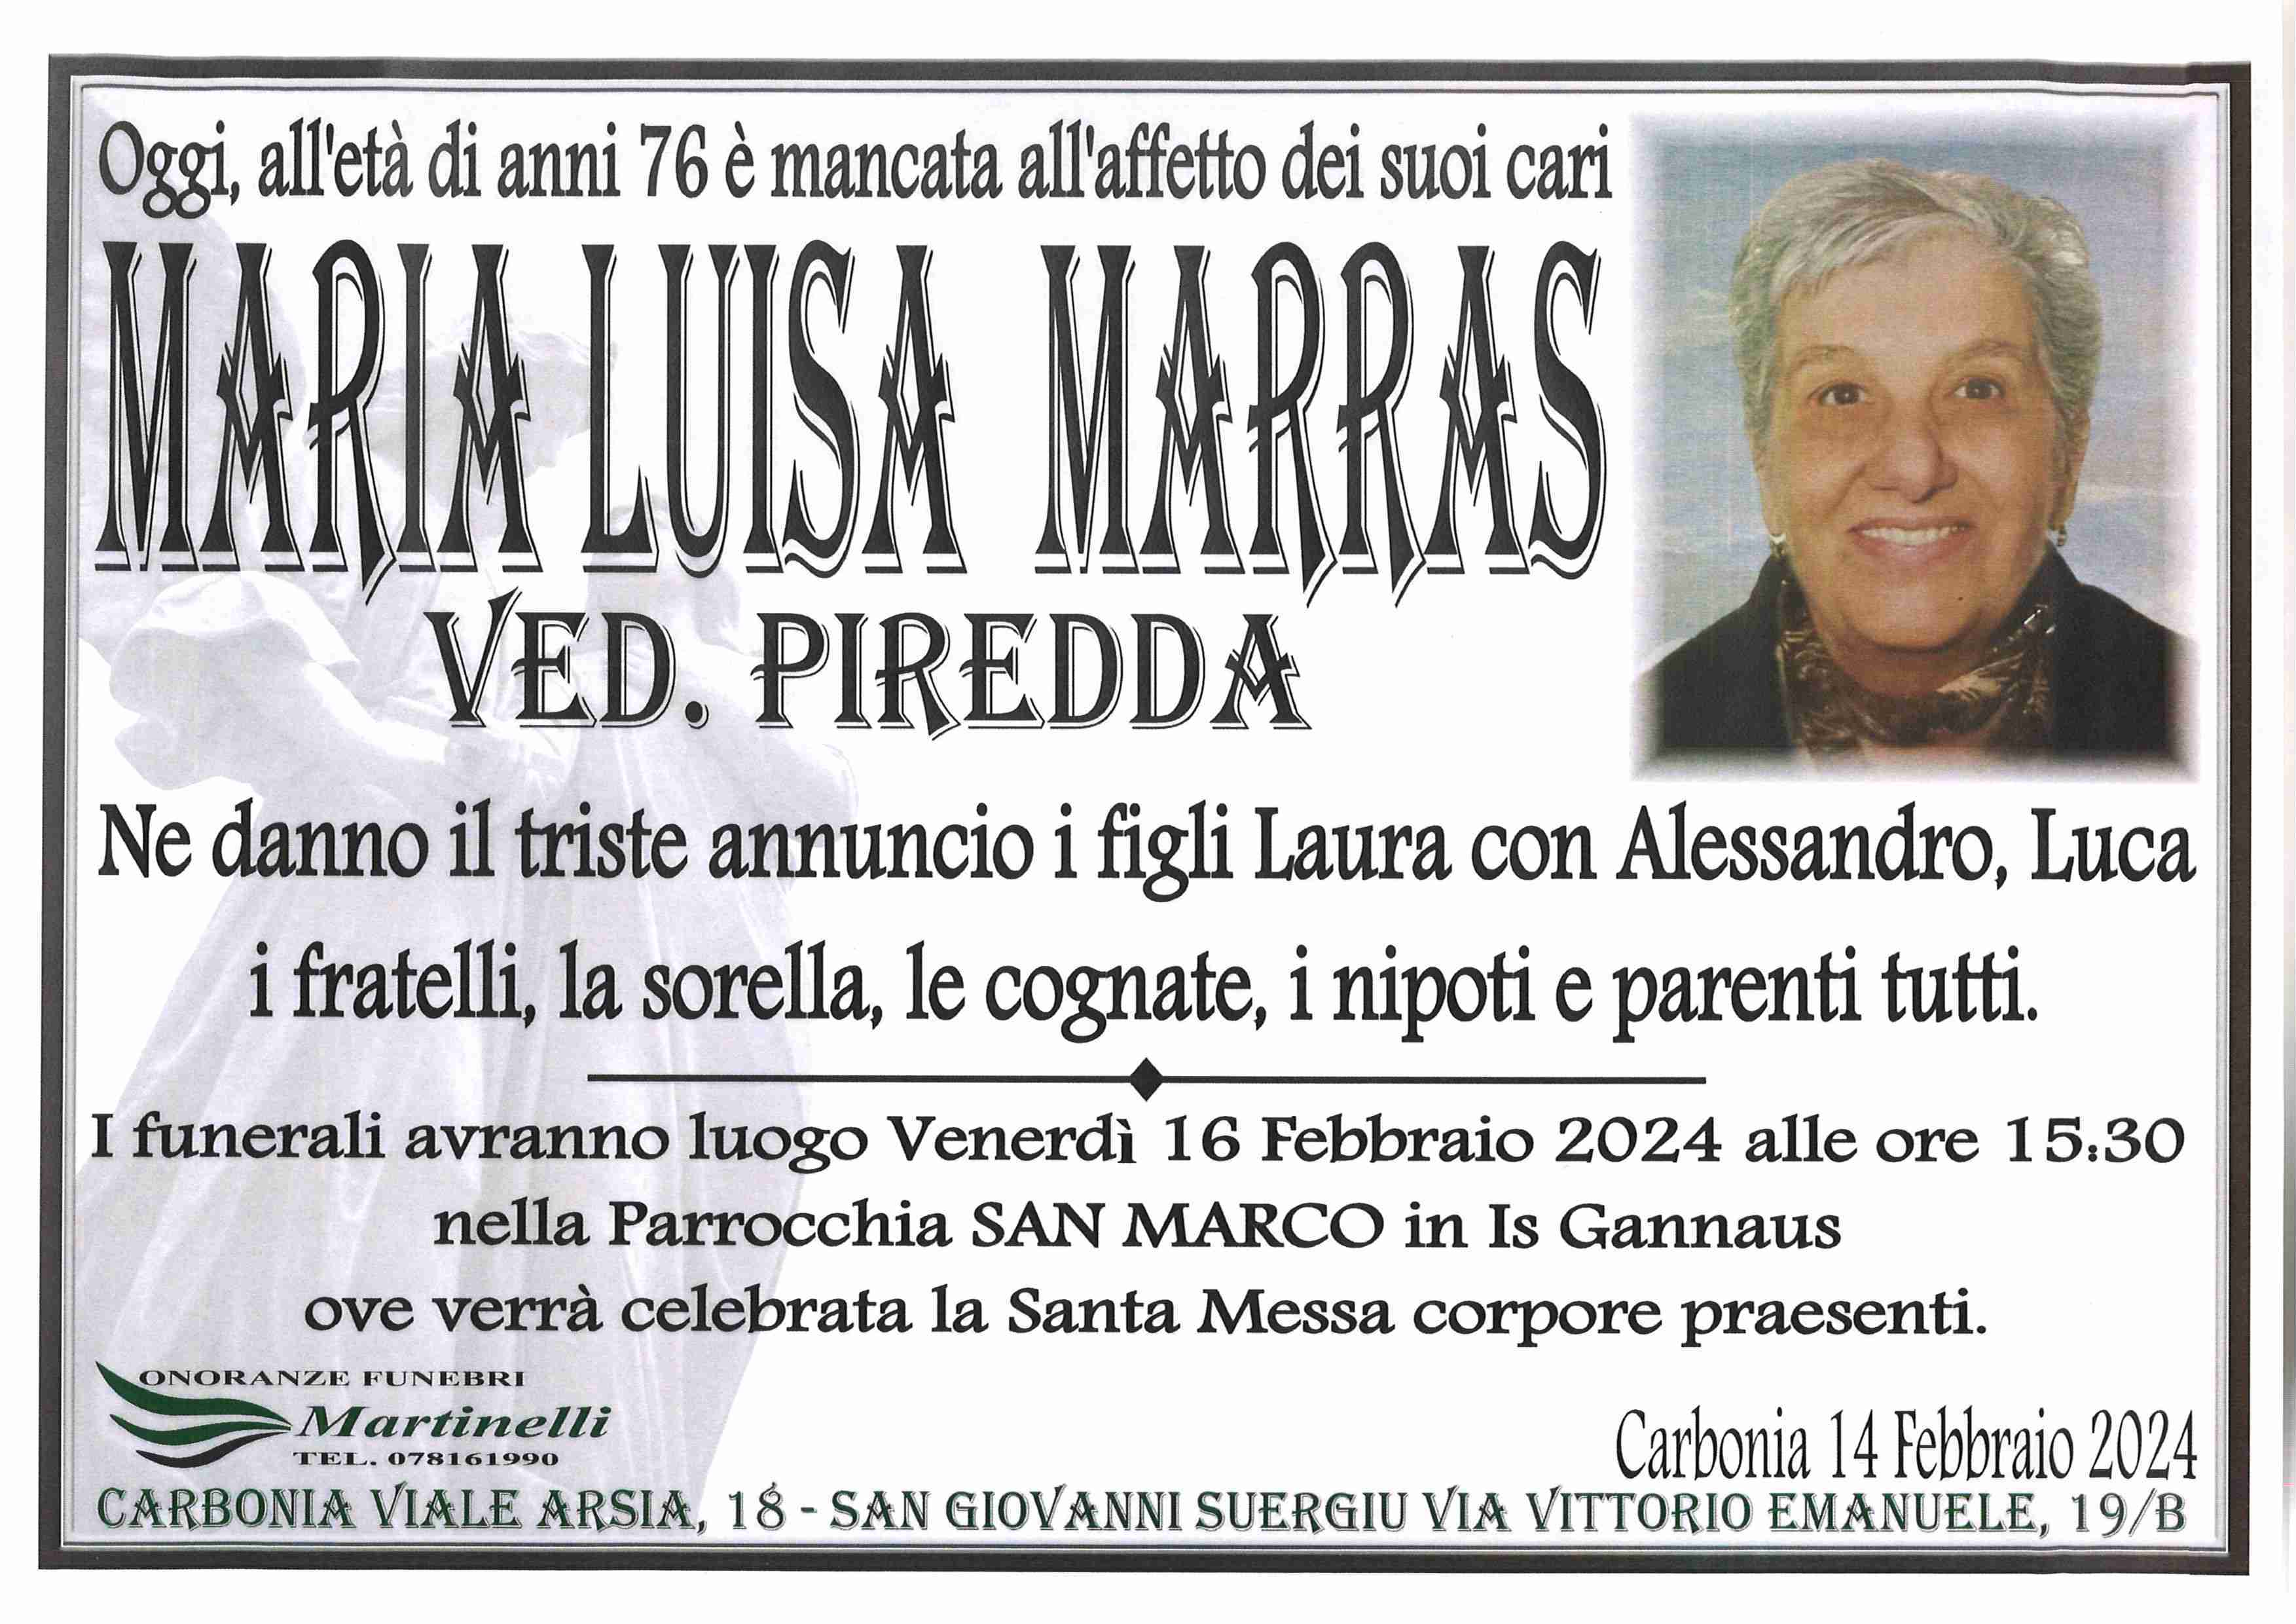 Maria Luisa Marras